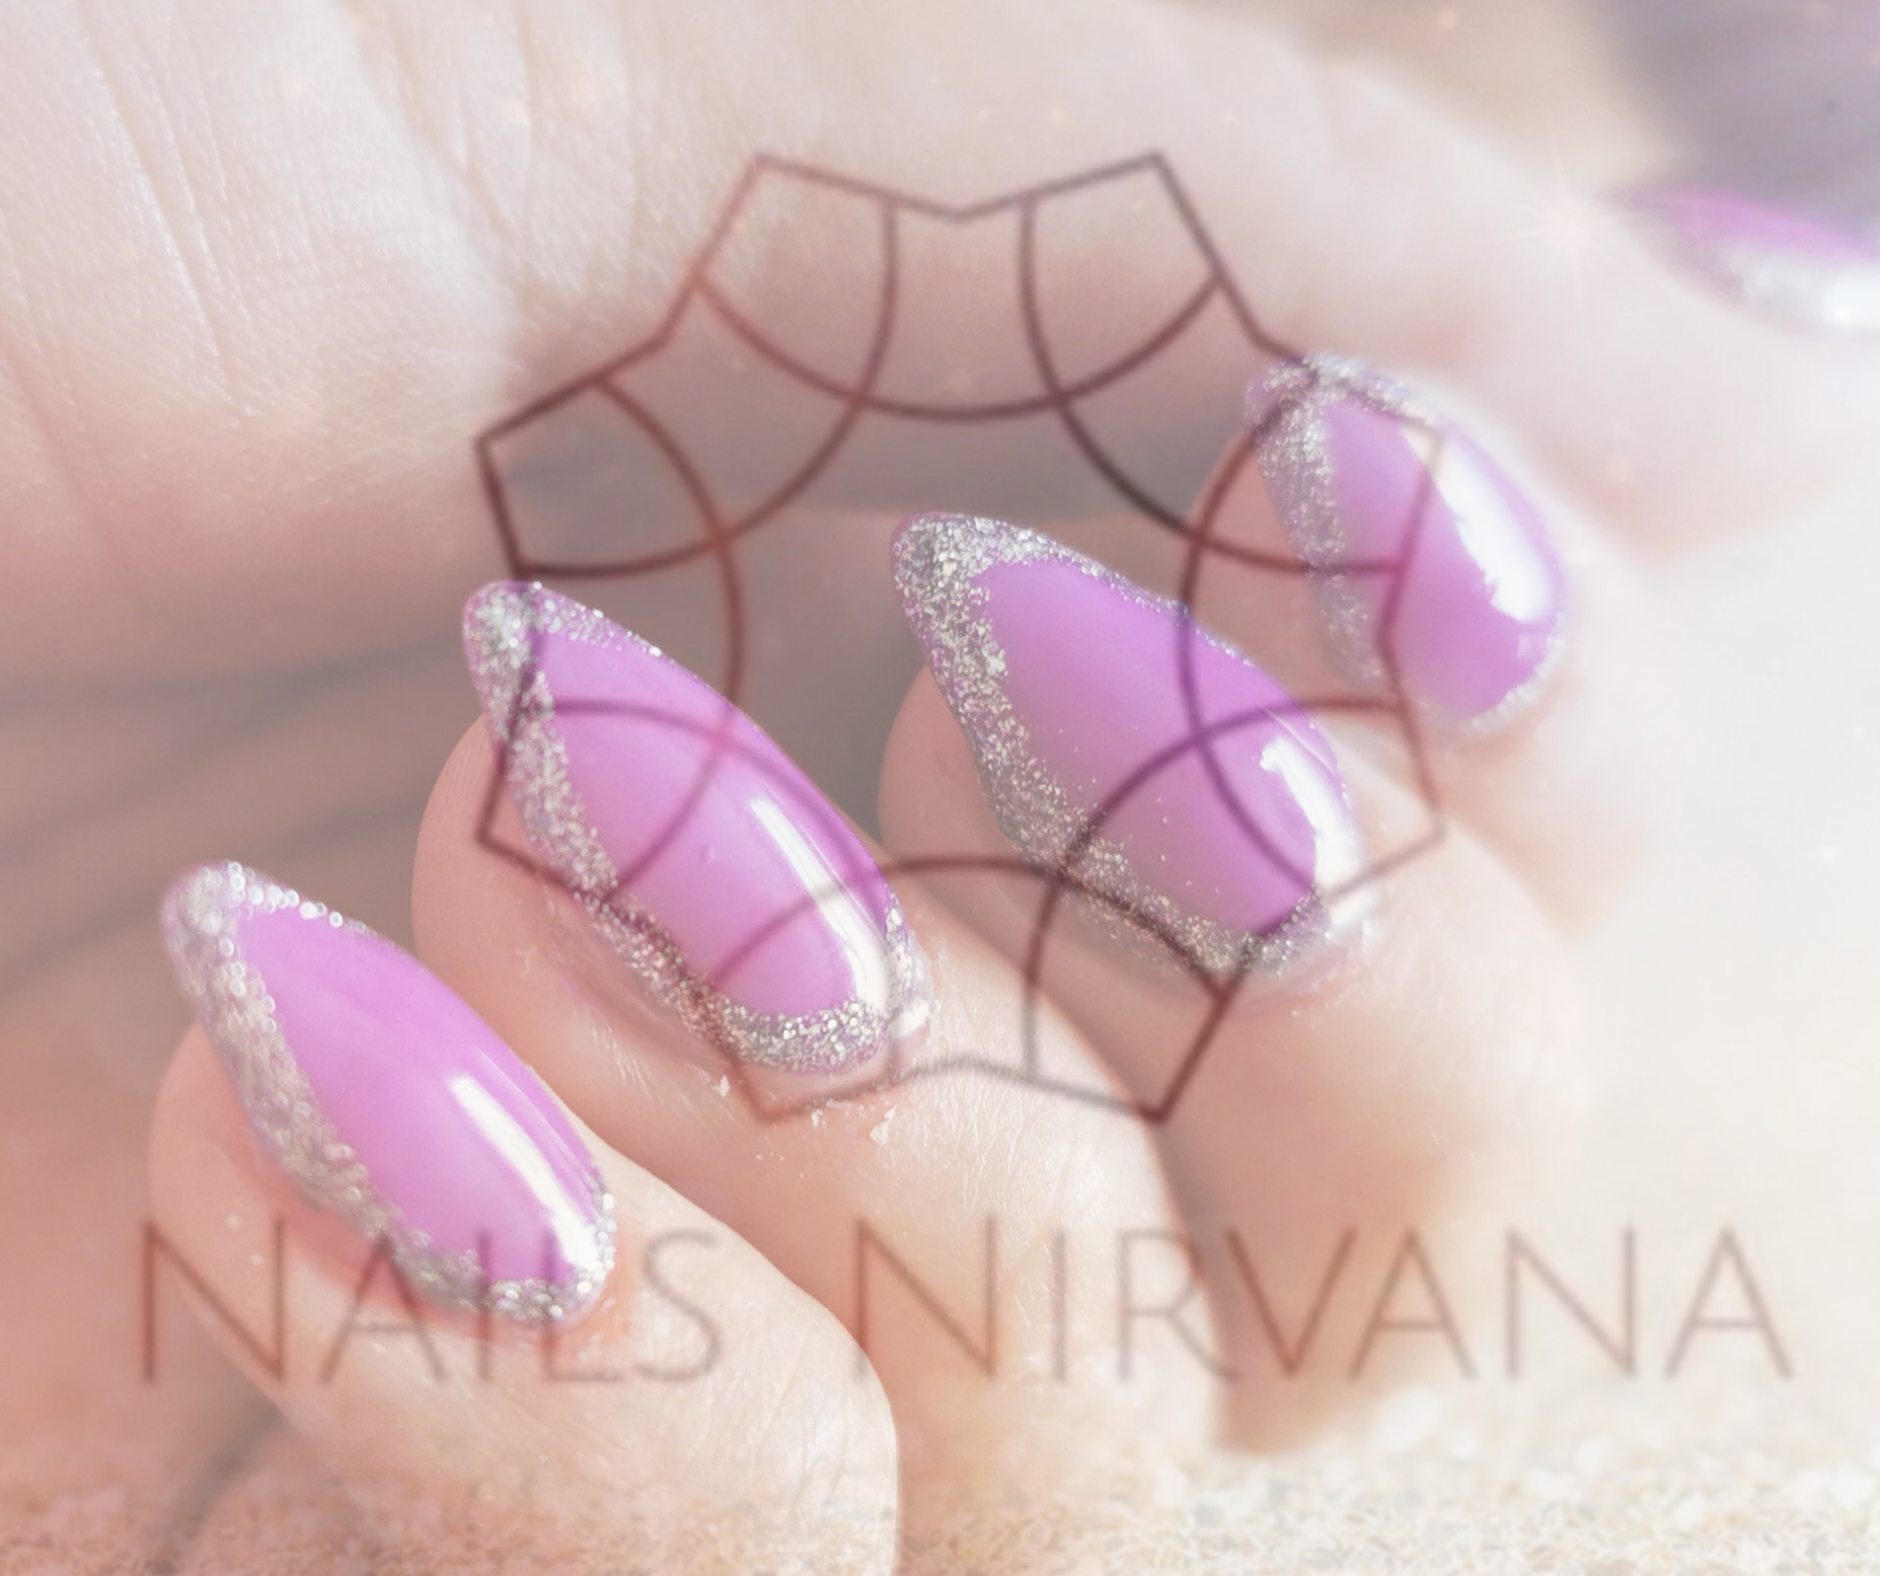 Nails Nirvana And Beauty